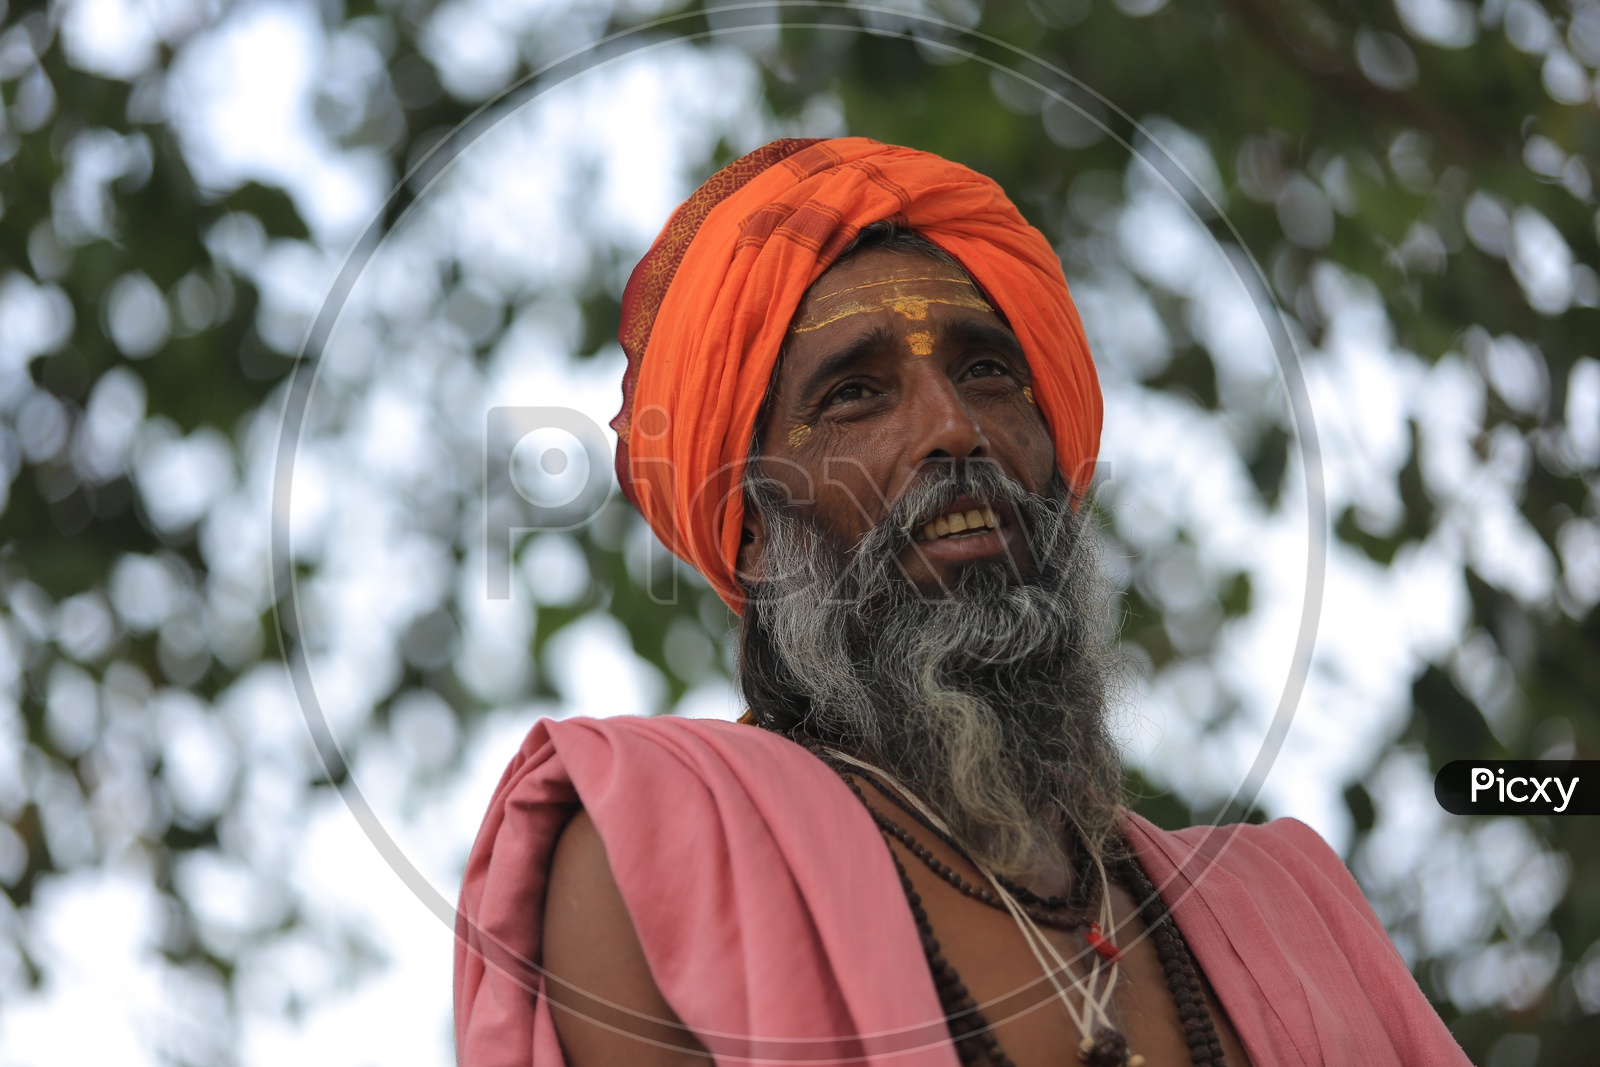 Hindu Baba Or Sadhu in Kumbh Mela